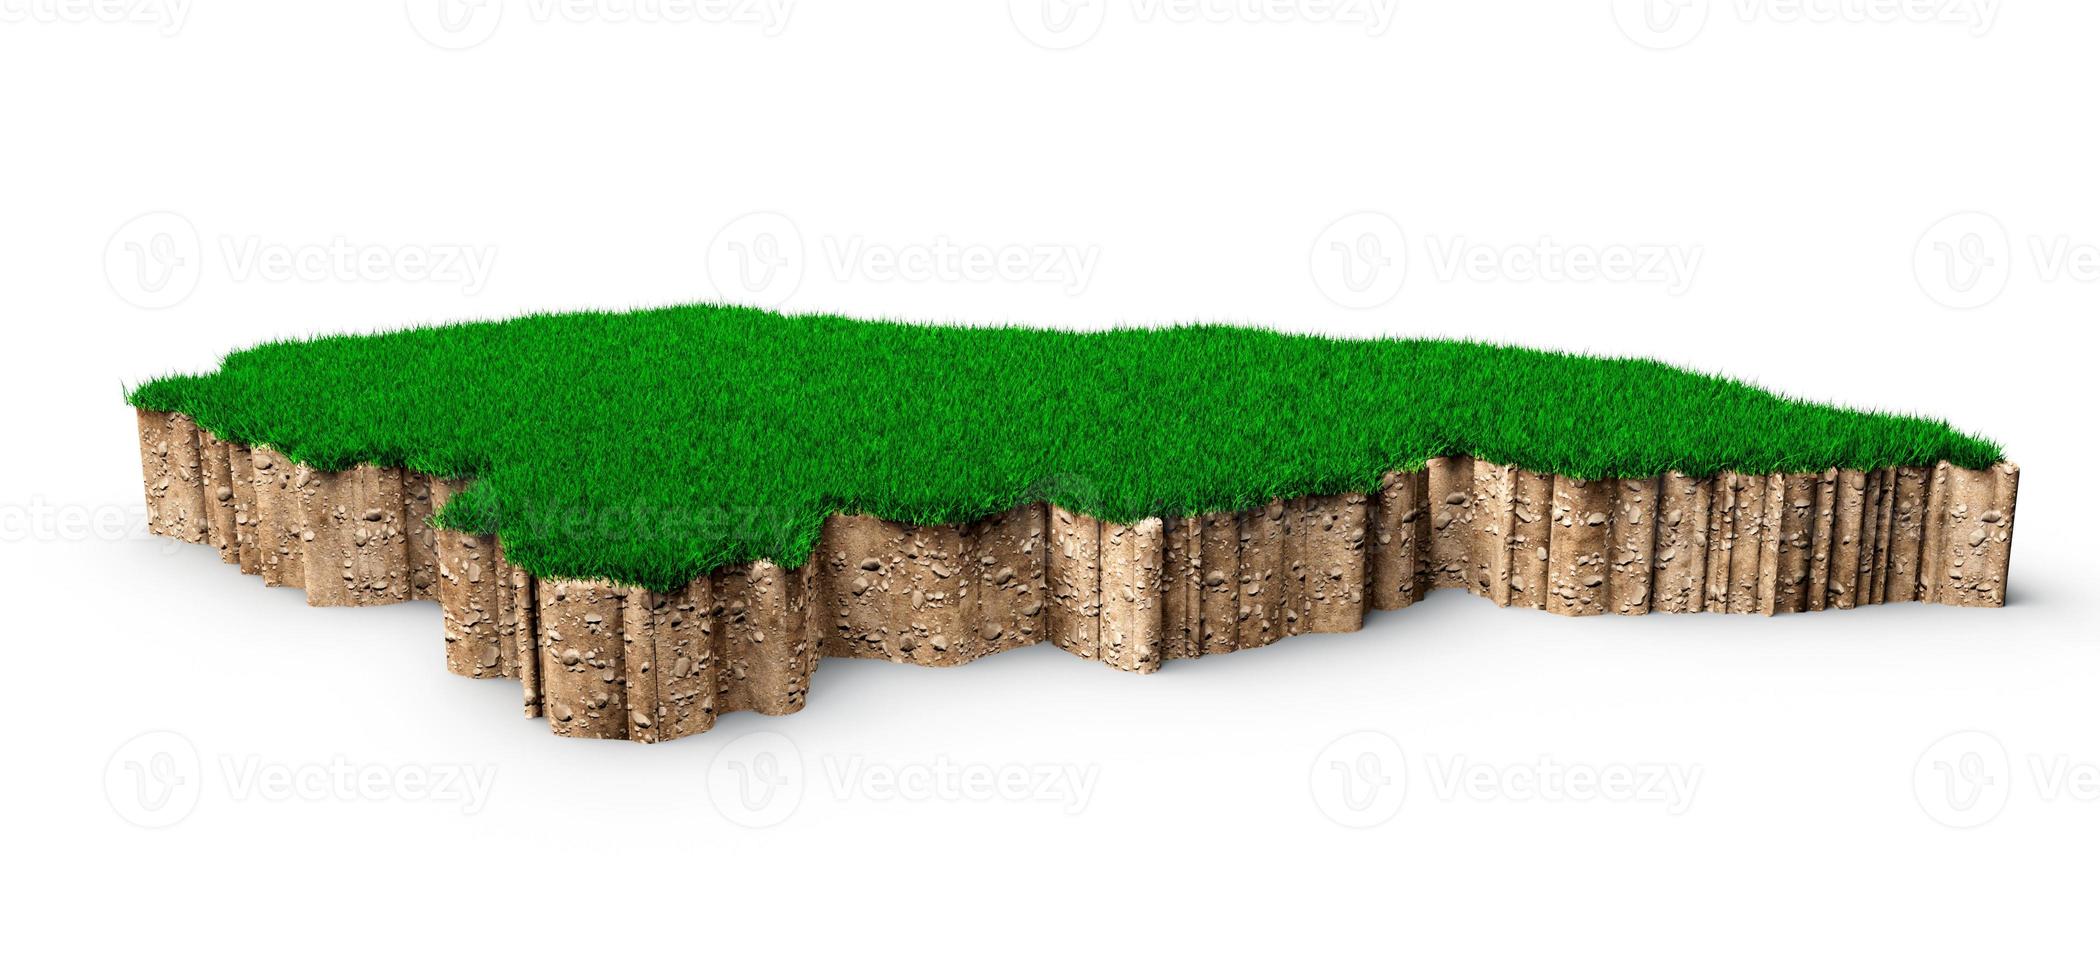 honduras mapeia solo geologia terra seção transversal com grama verde e textura de solo rochoso ilustração 3d foto